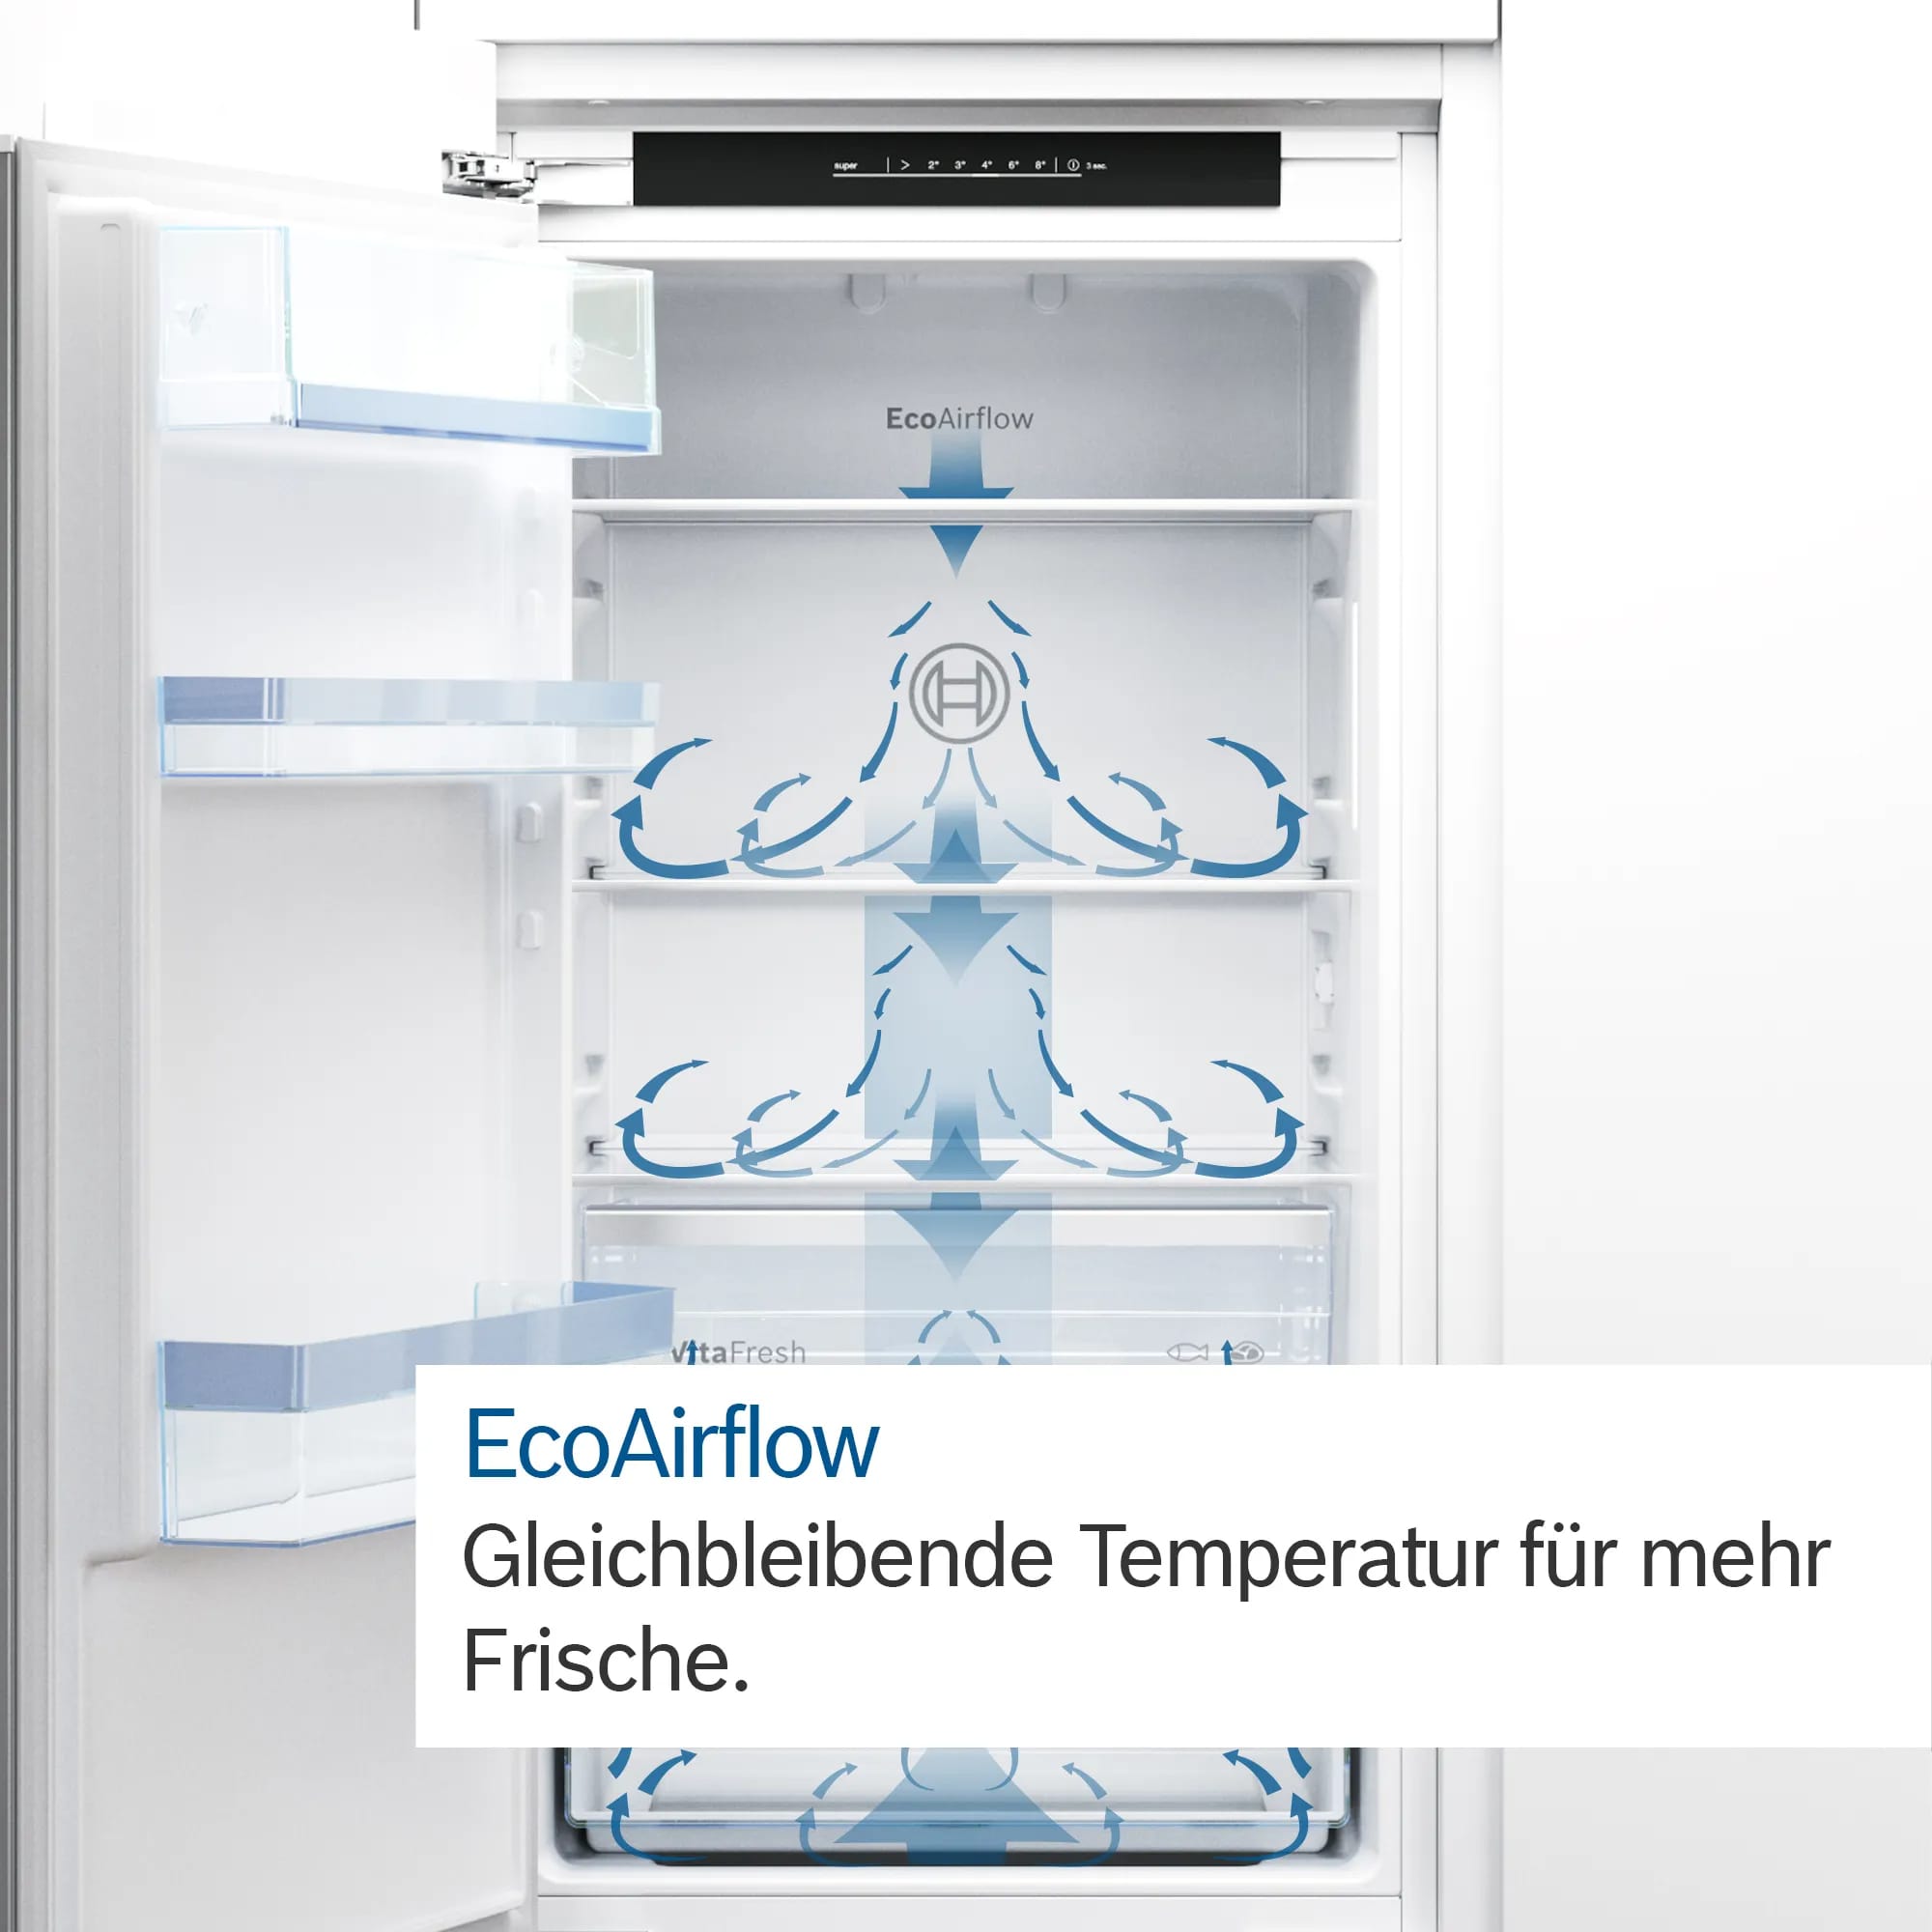 Công nghệ EcoAirflow: Phân phối độ ẩm và nhiệt độ đều khắp khoang tủ